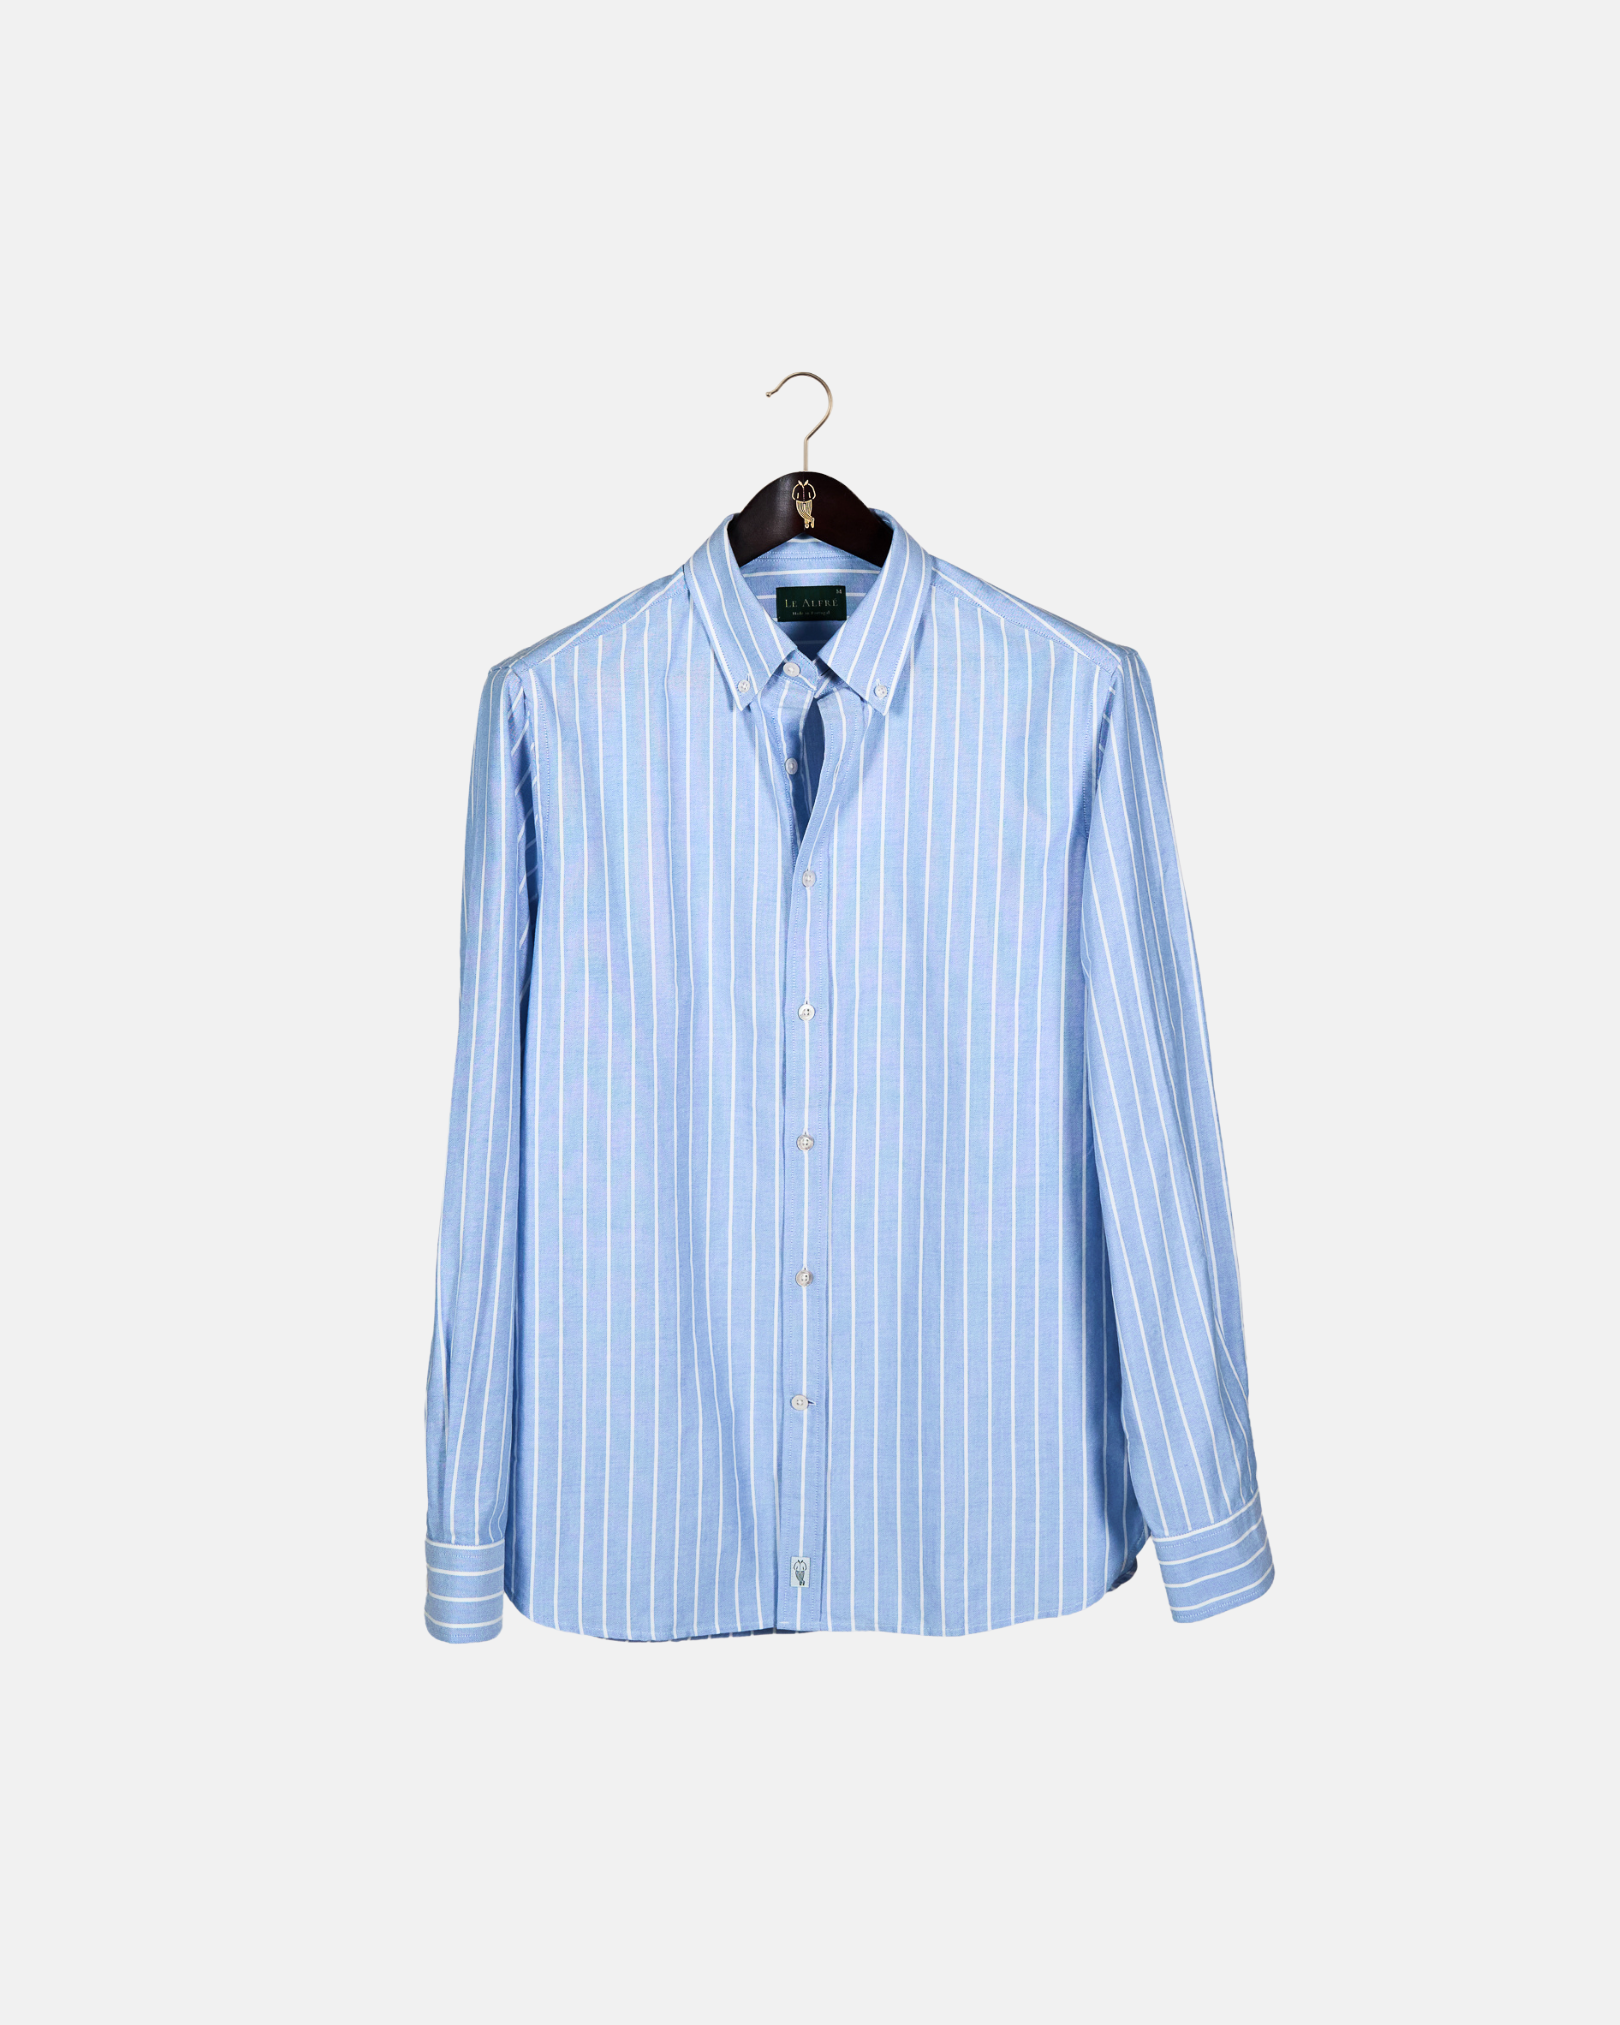 最新作セールWide Stripe Shirt Lサイズ シャツ